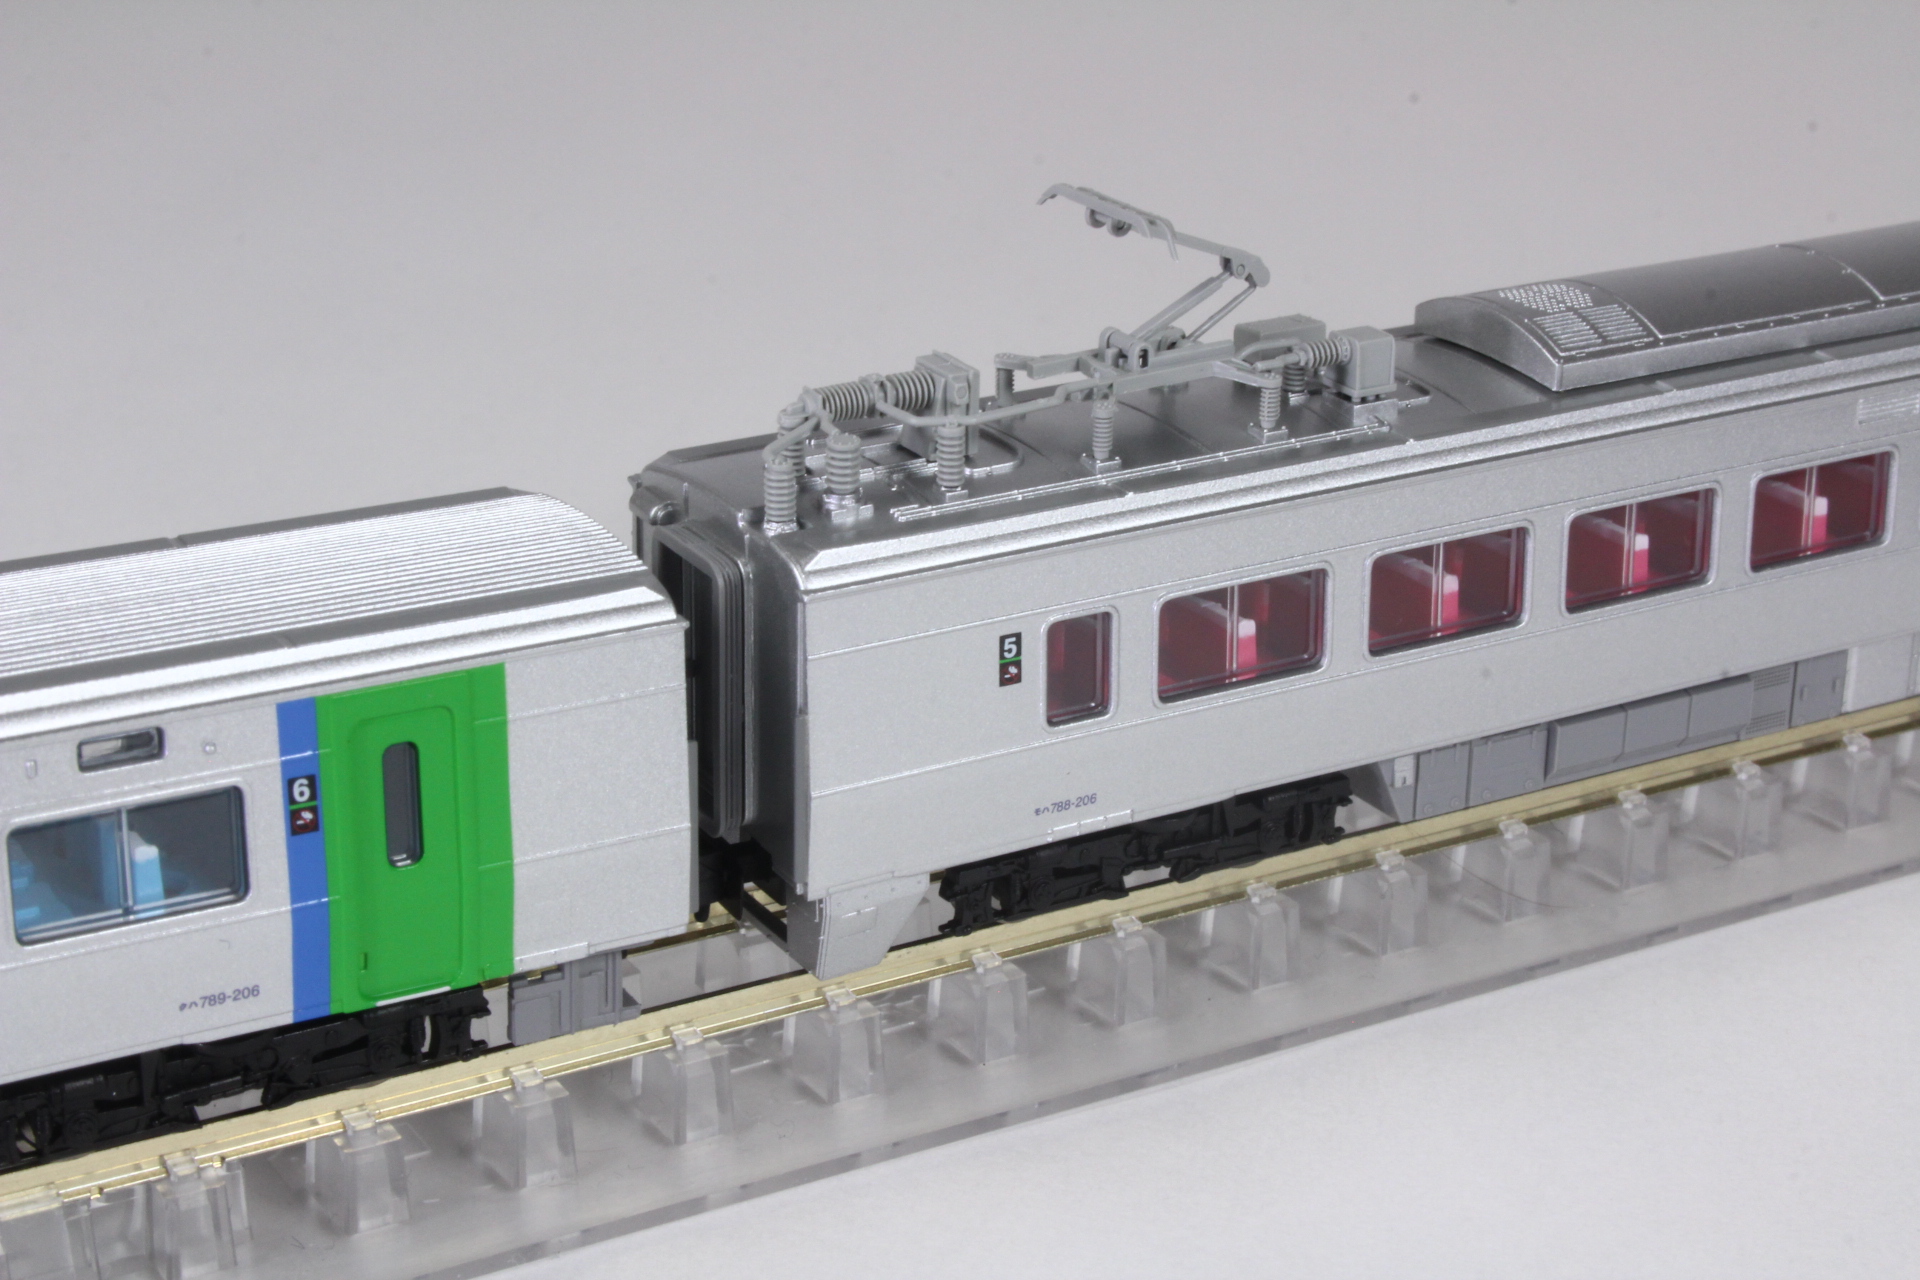 マイクロエース A0845 789系-0 特急ライラック 6両セット 鉄道模型 N